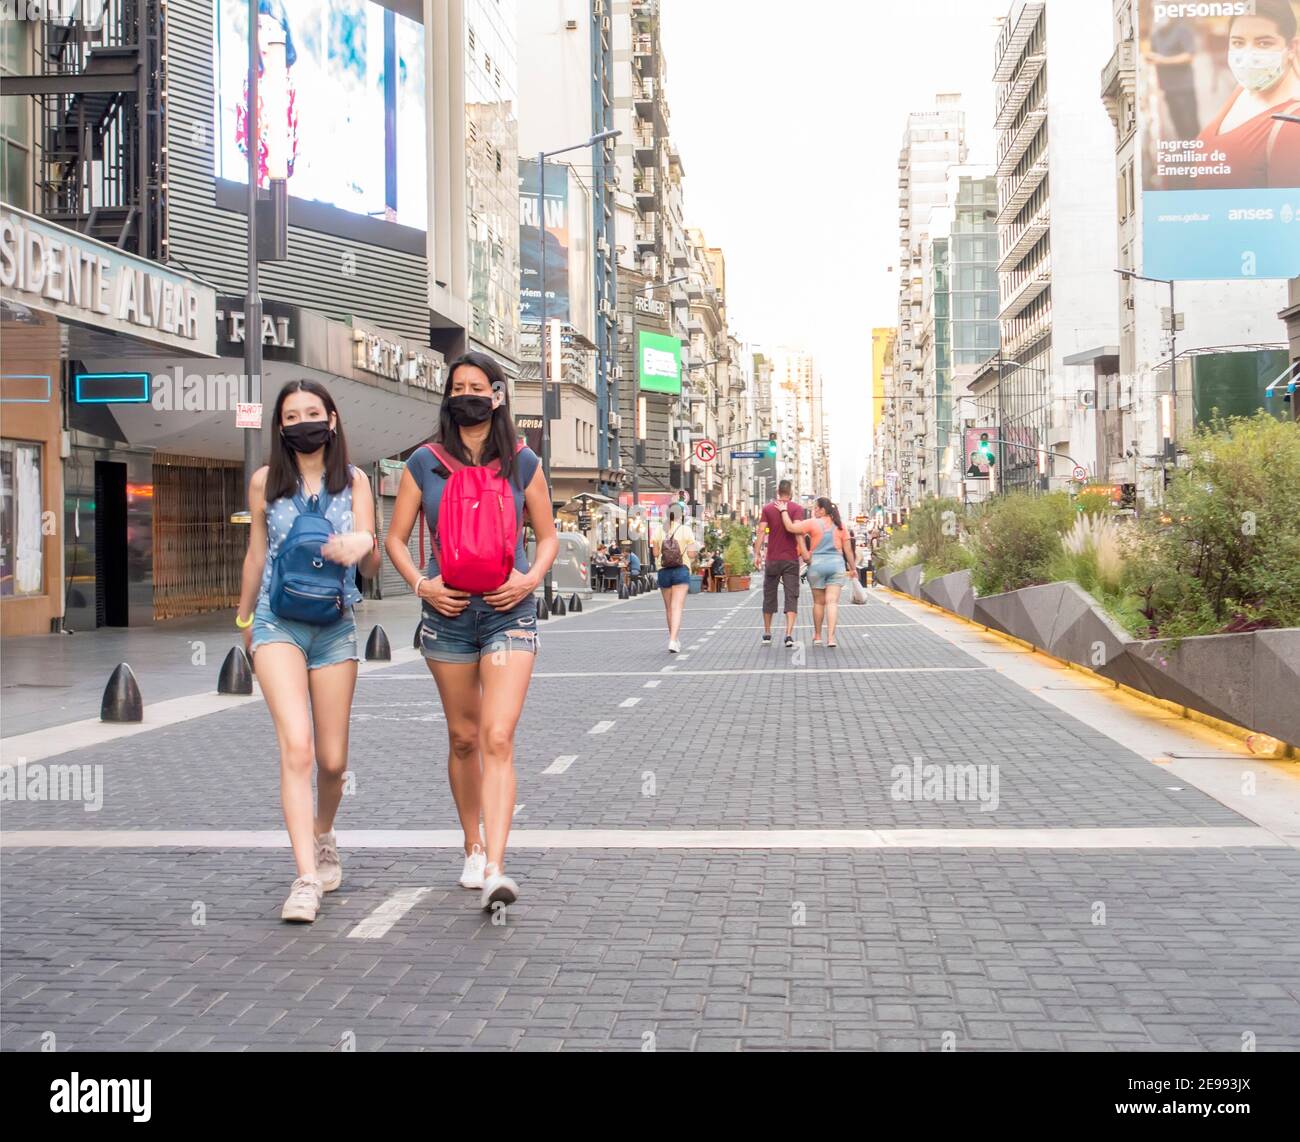 Persone che indossano maschere durante la pandemia Covid 19 a piedi lungo Corrientes Avenue, Buenos Aires, Argentina Foto Stock